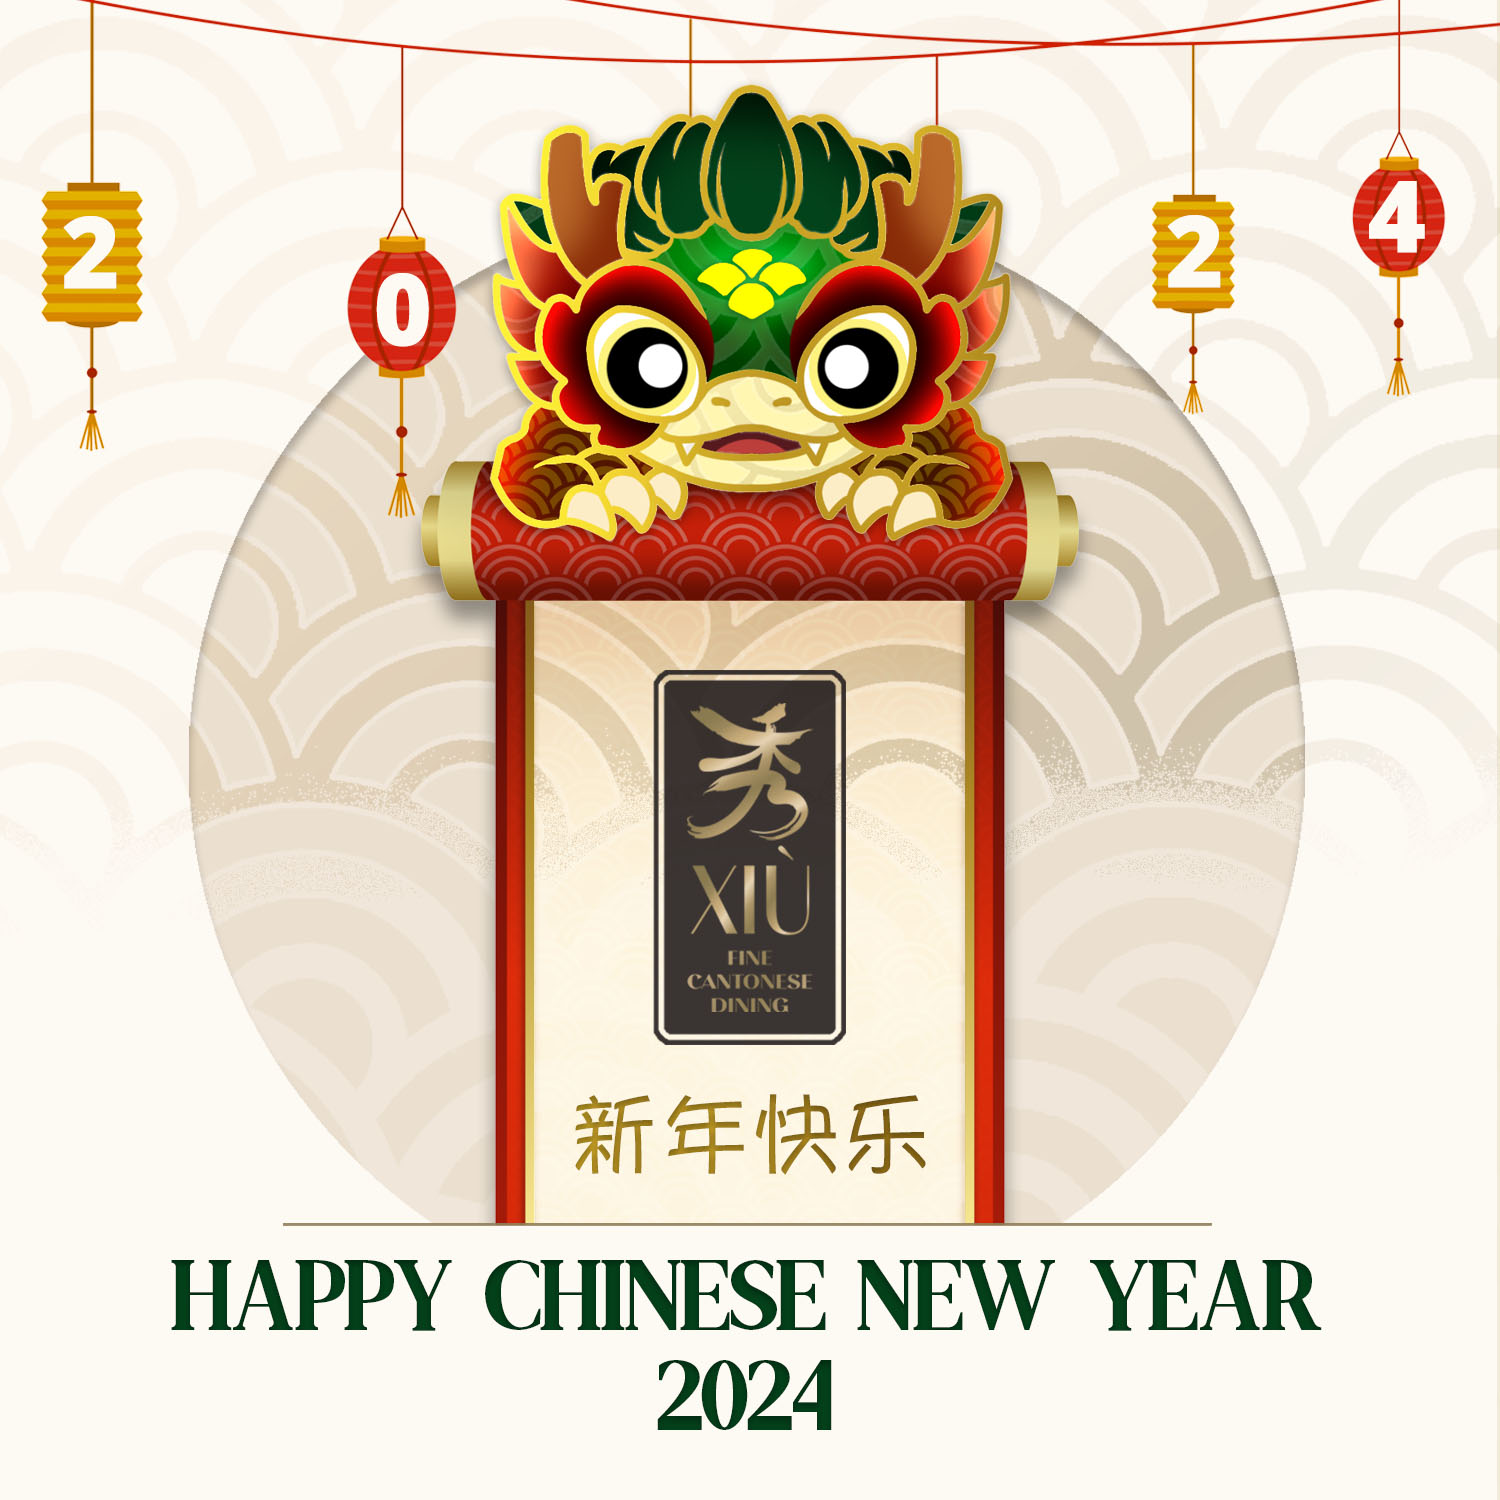 2024 CNY set menu for 6